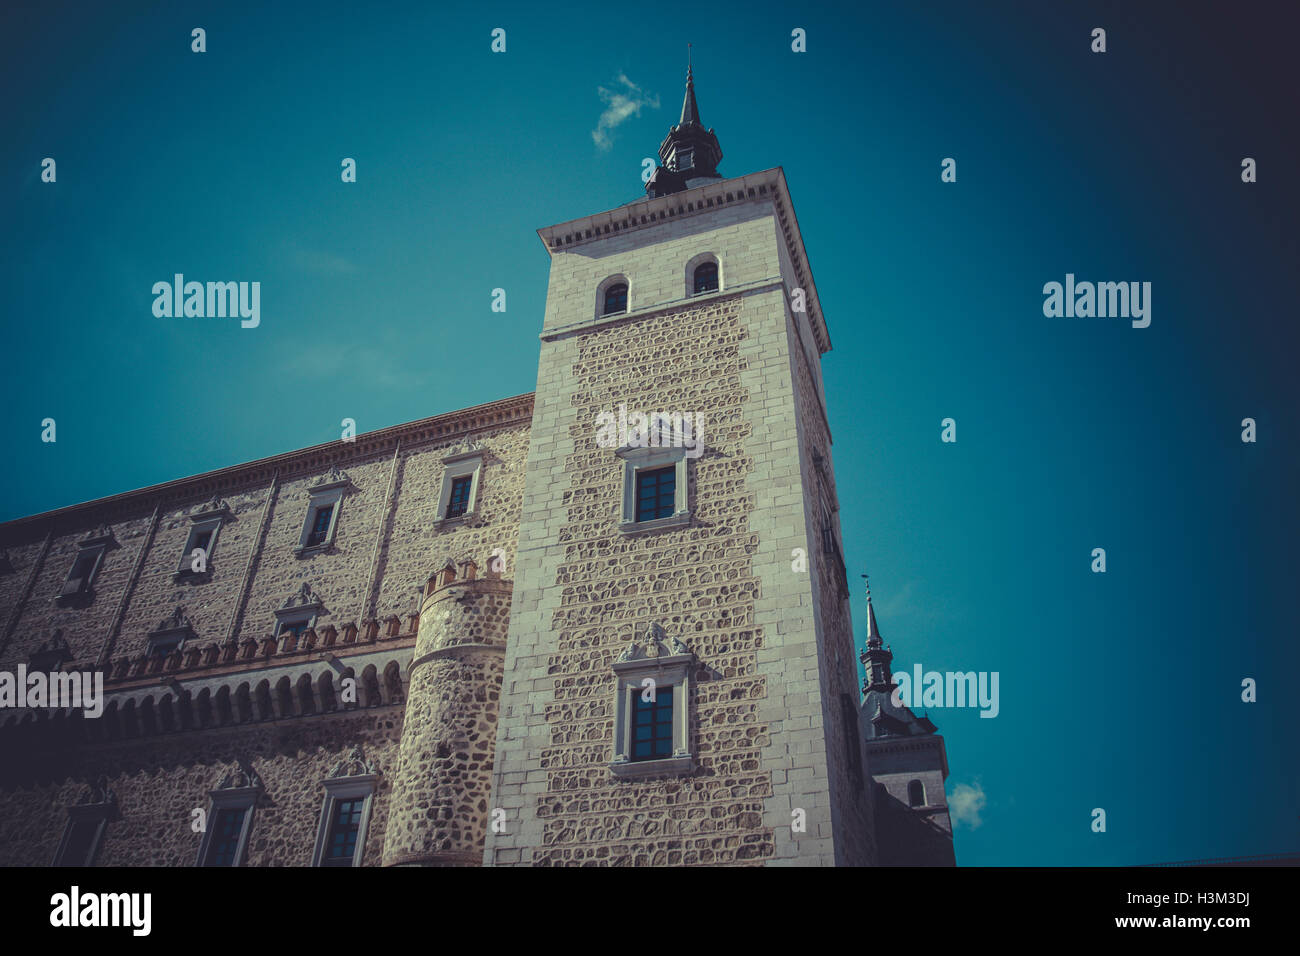 Alcazar von Toledo, militärische Festung zerstört, während die spanische Stockfoto